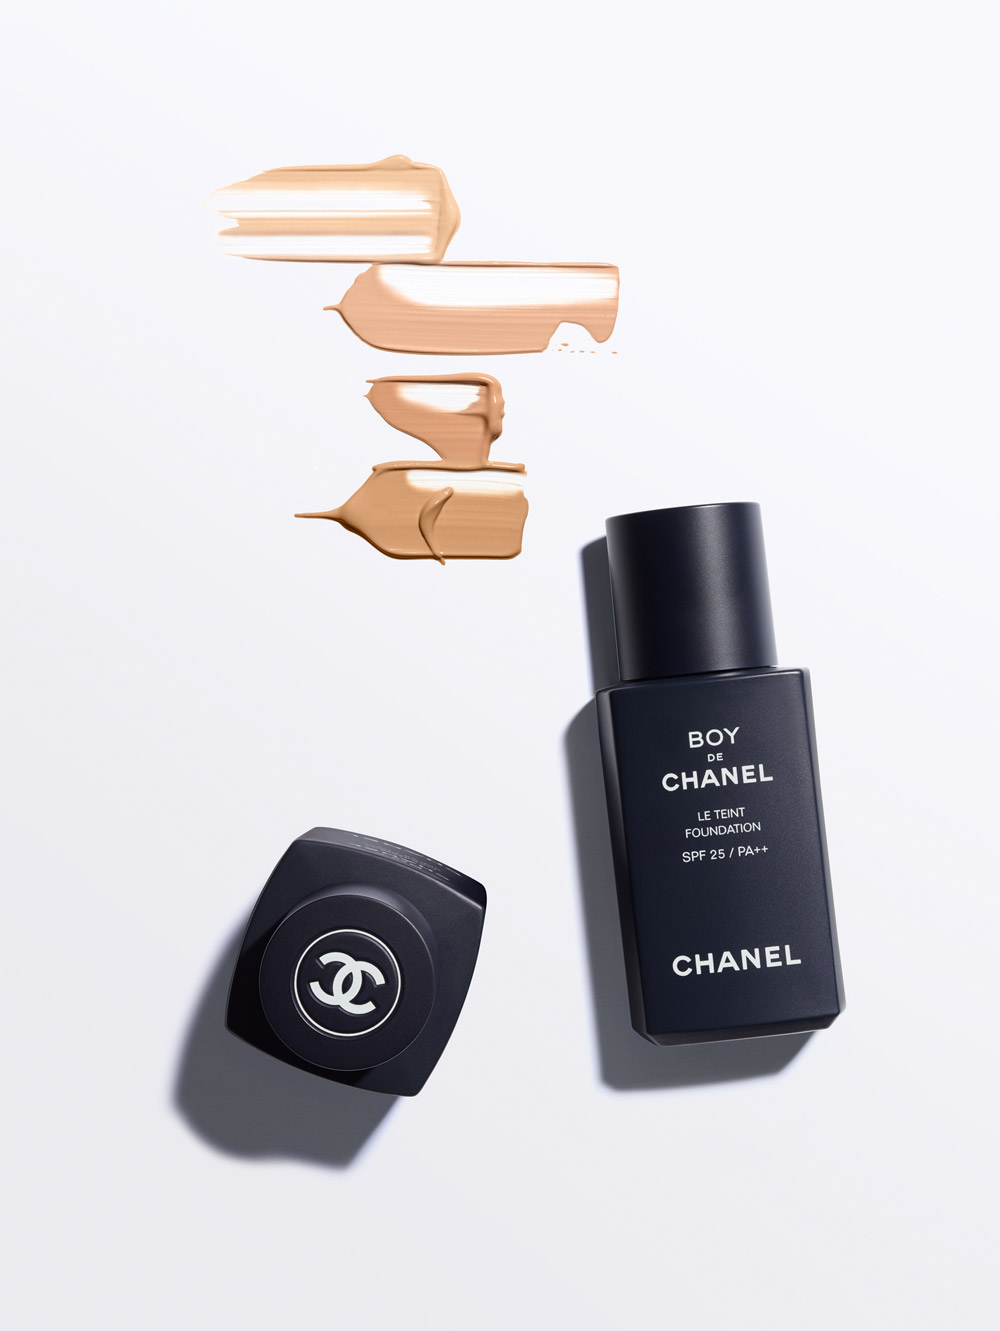 Mit Boy de Chanel lanciert das Traditionshaus im kommenden Jahr die erste Makeup Linie für Männer. Was sagt die sonrisa Leserschaft dazu?